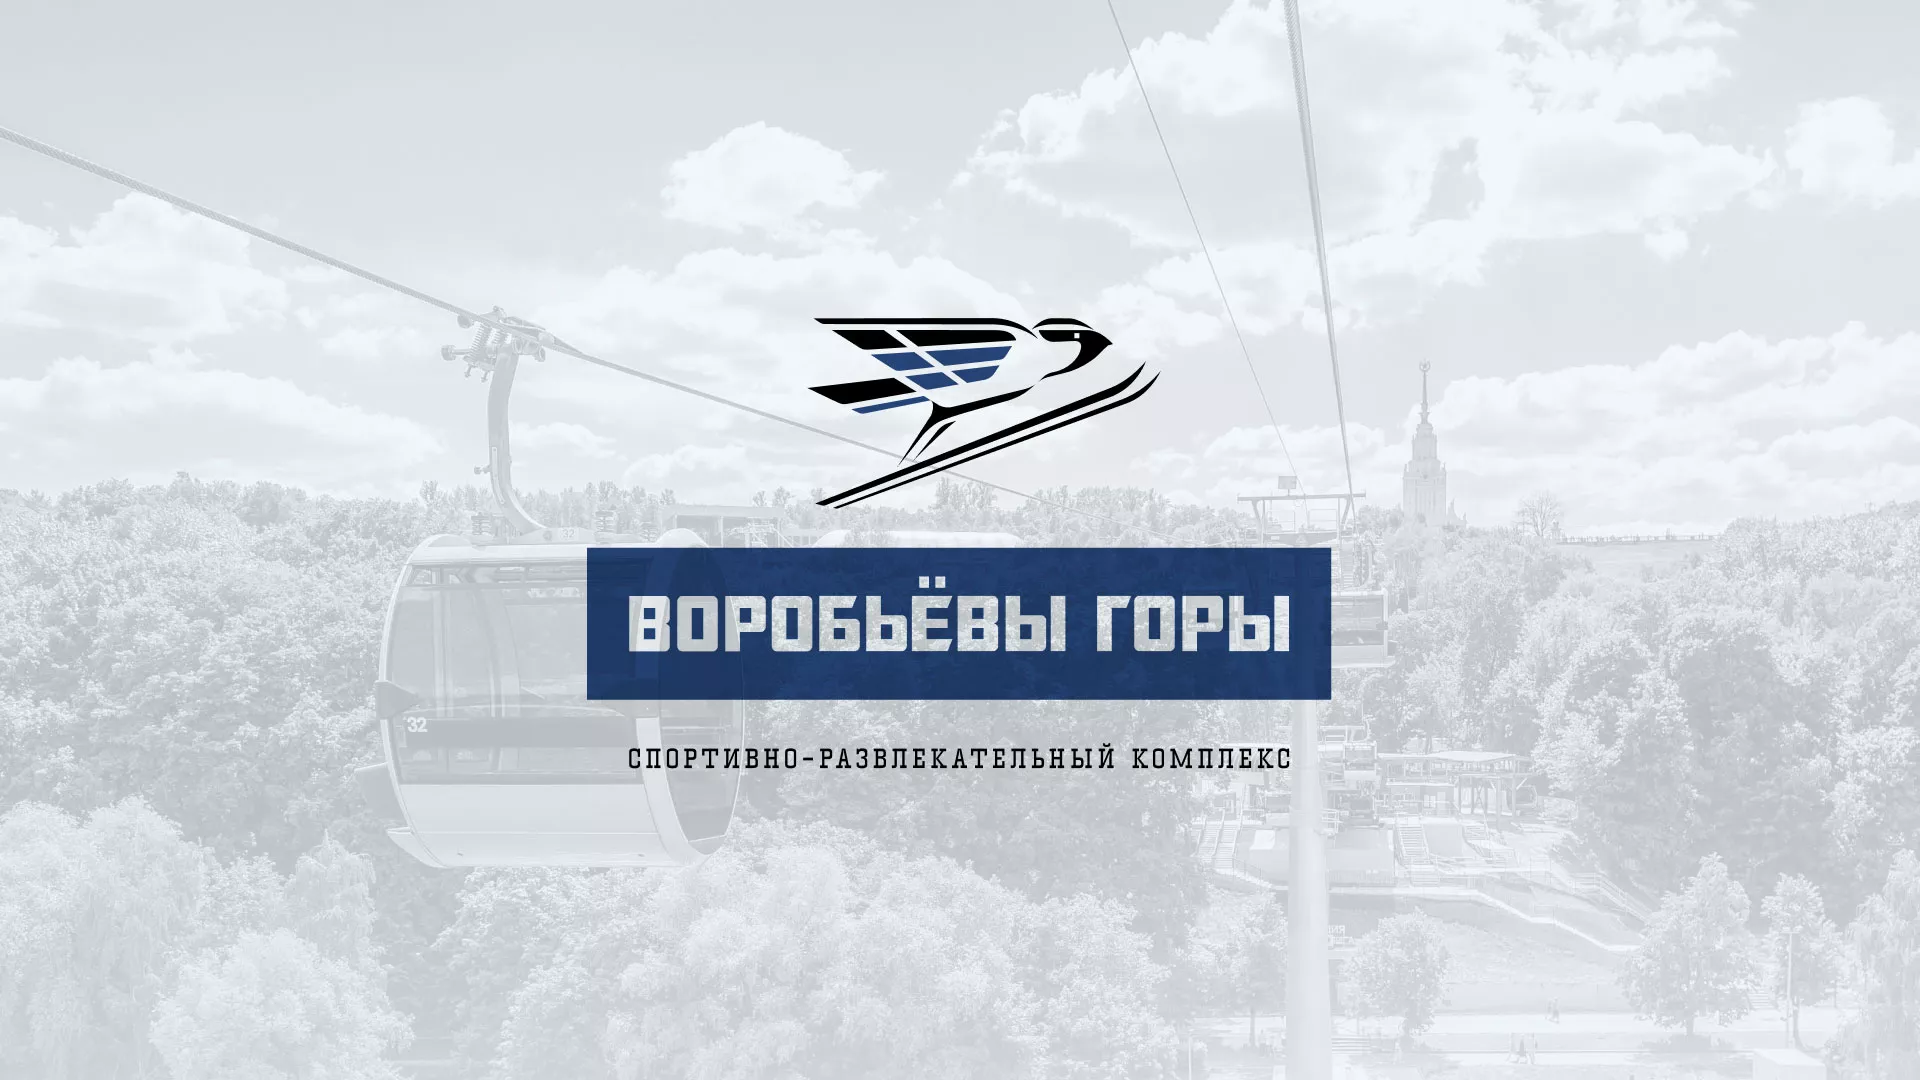 Разработка сайта в Гусь-Хрустальном для спортивно-развлекательного комплекса «Воробьёвы горы»